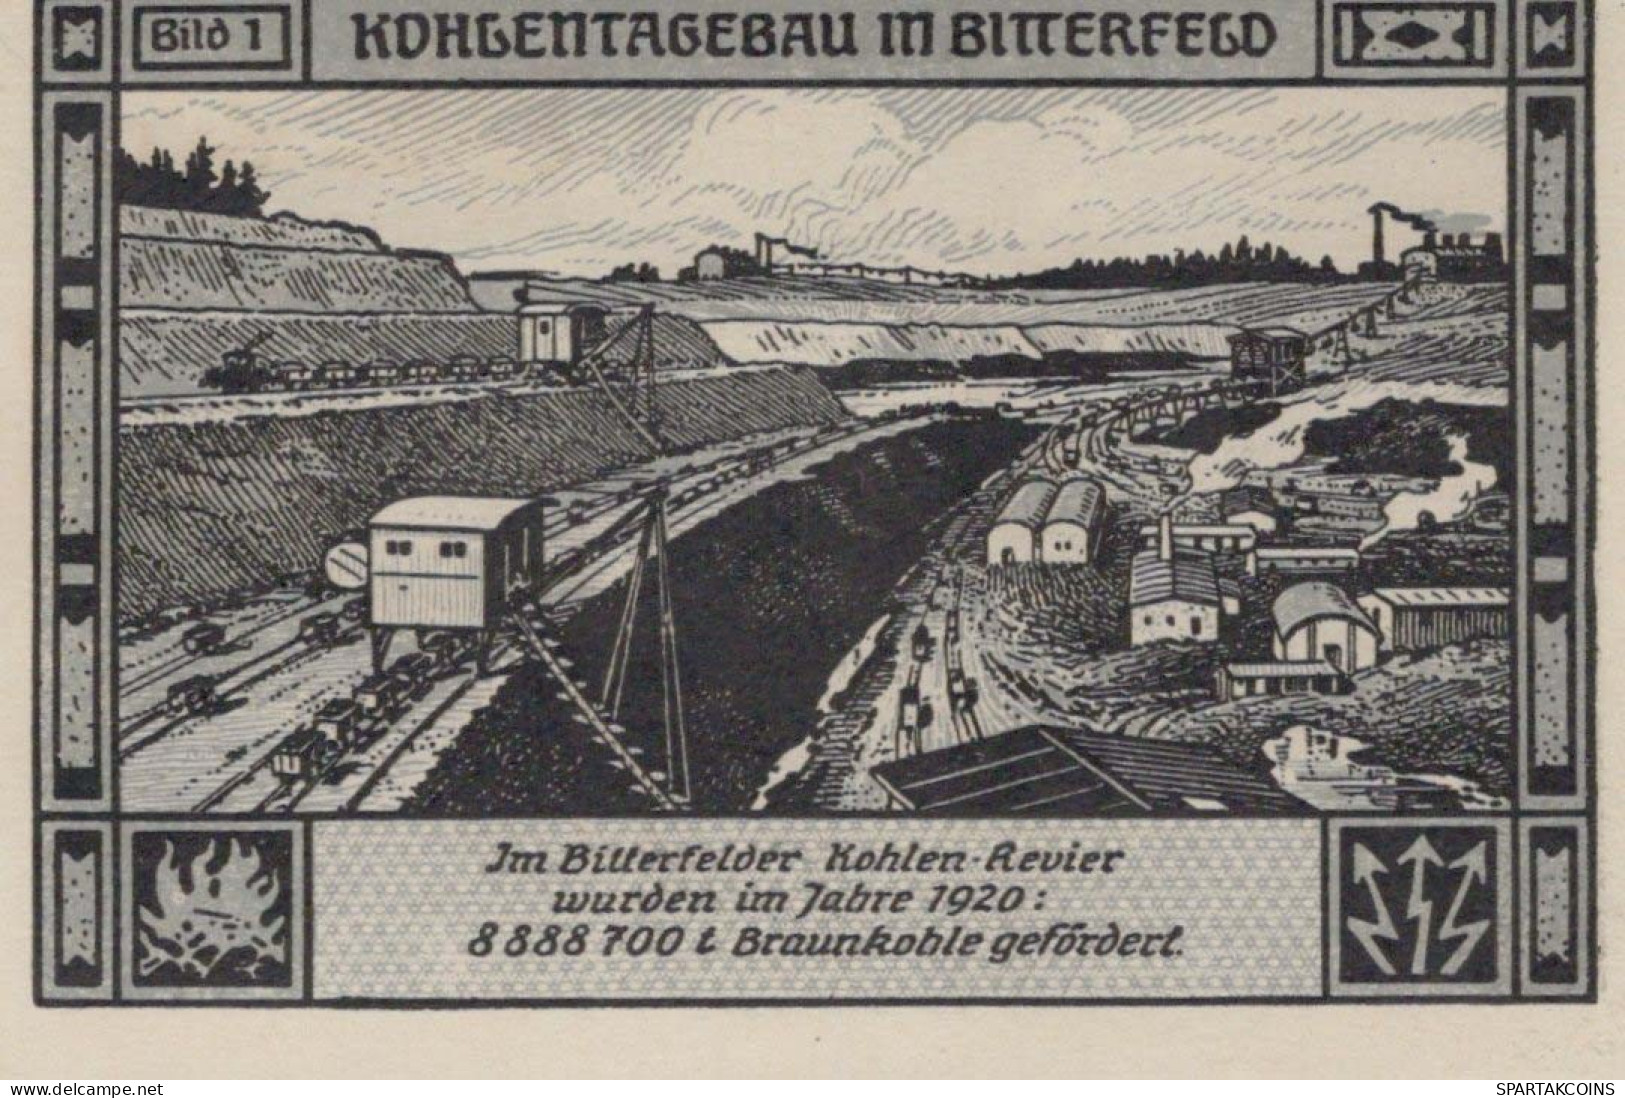 75 PFENNIG 1921 Stadt BITTERFIELD Westphalia UNC DEUTSCHLAND Notgeld #PA232 - [11] Emissions Locales